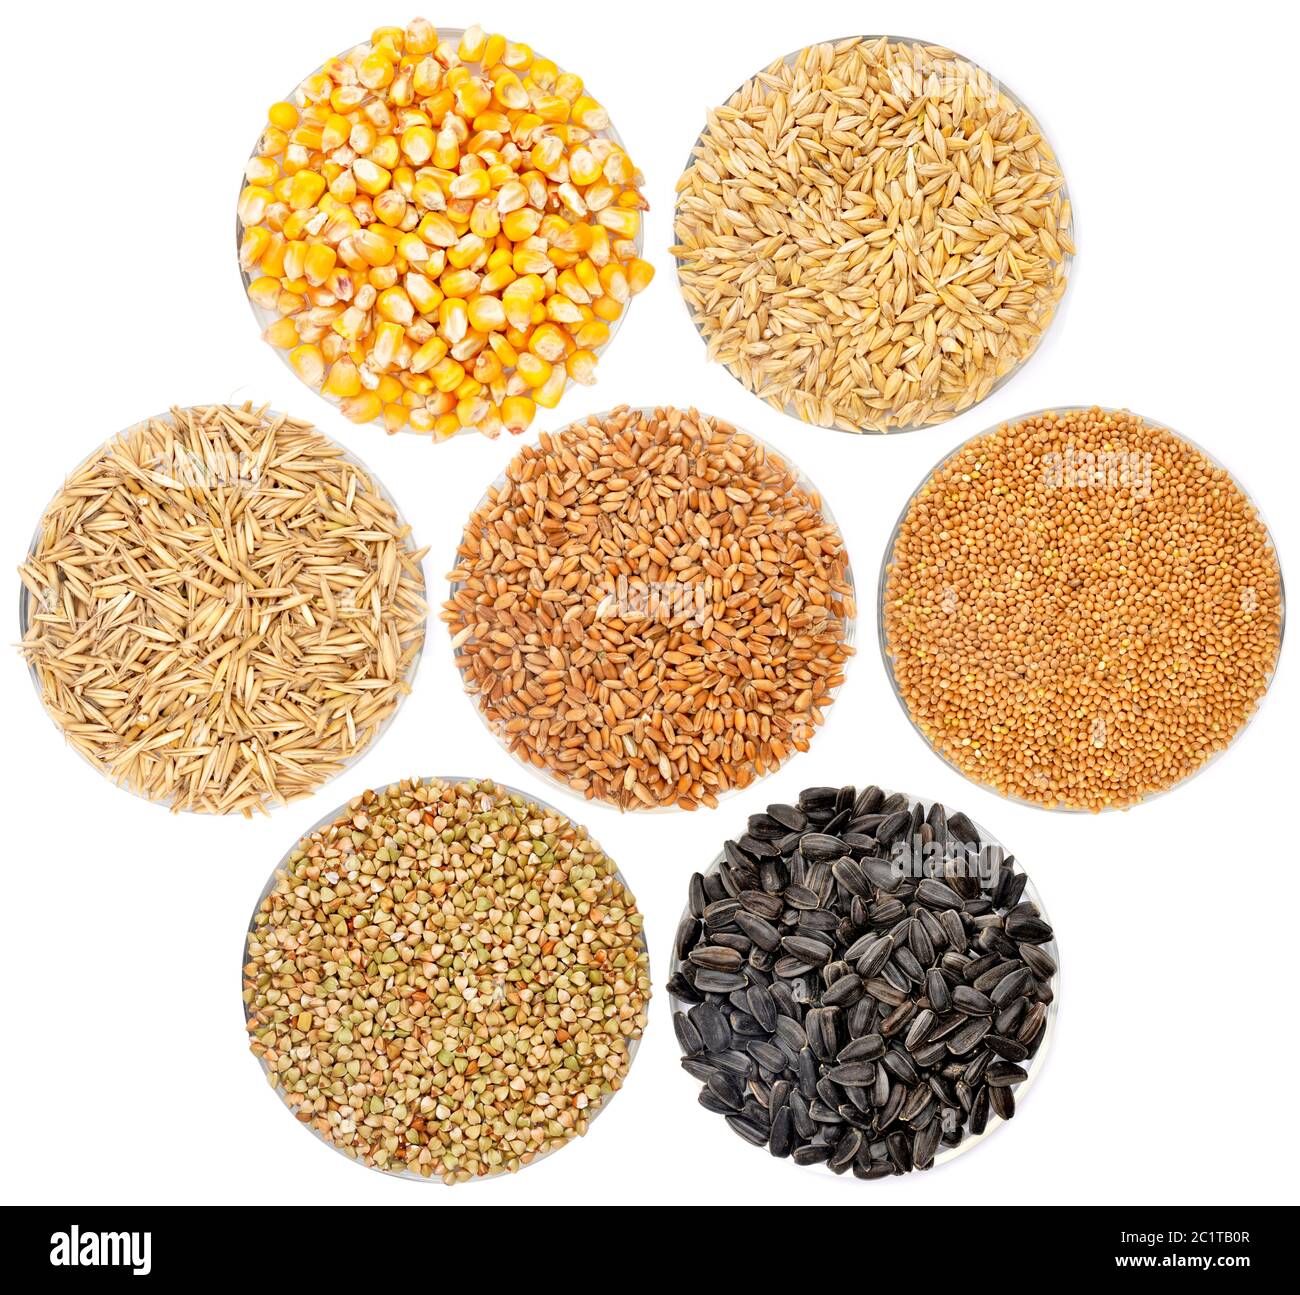 Cereales y alimentos básicos básicos básicos Fotografía de stock - Alamy